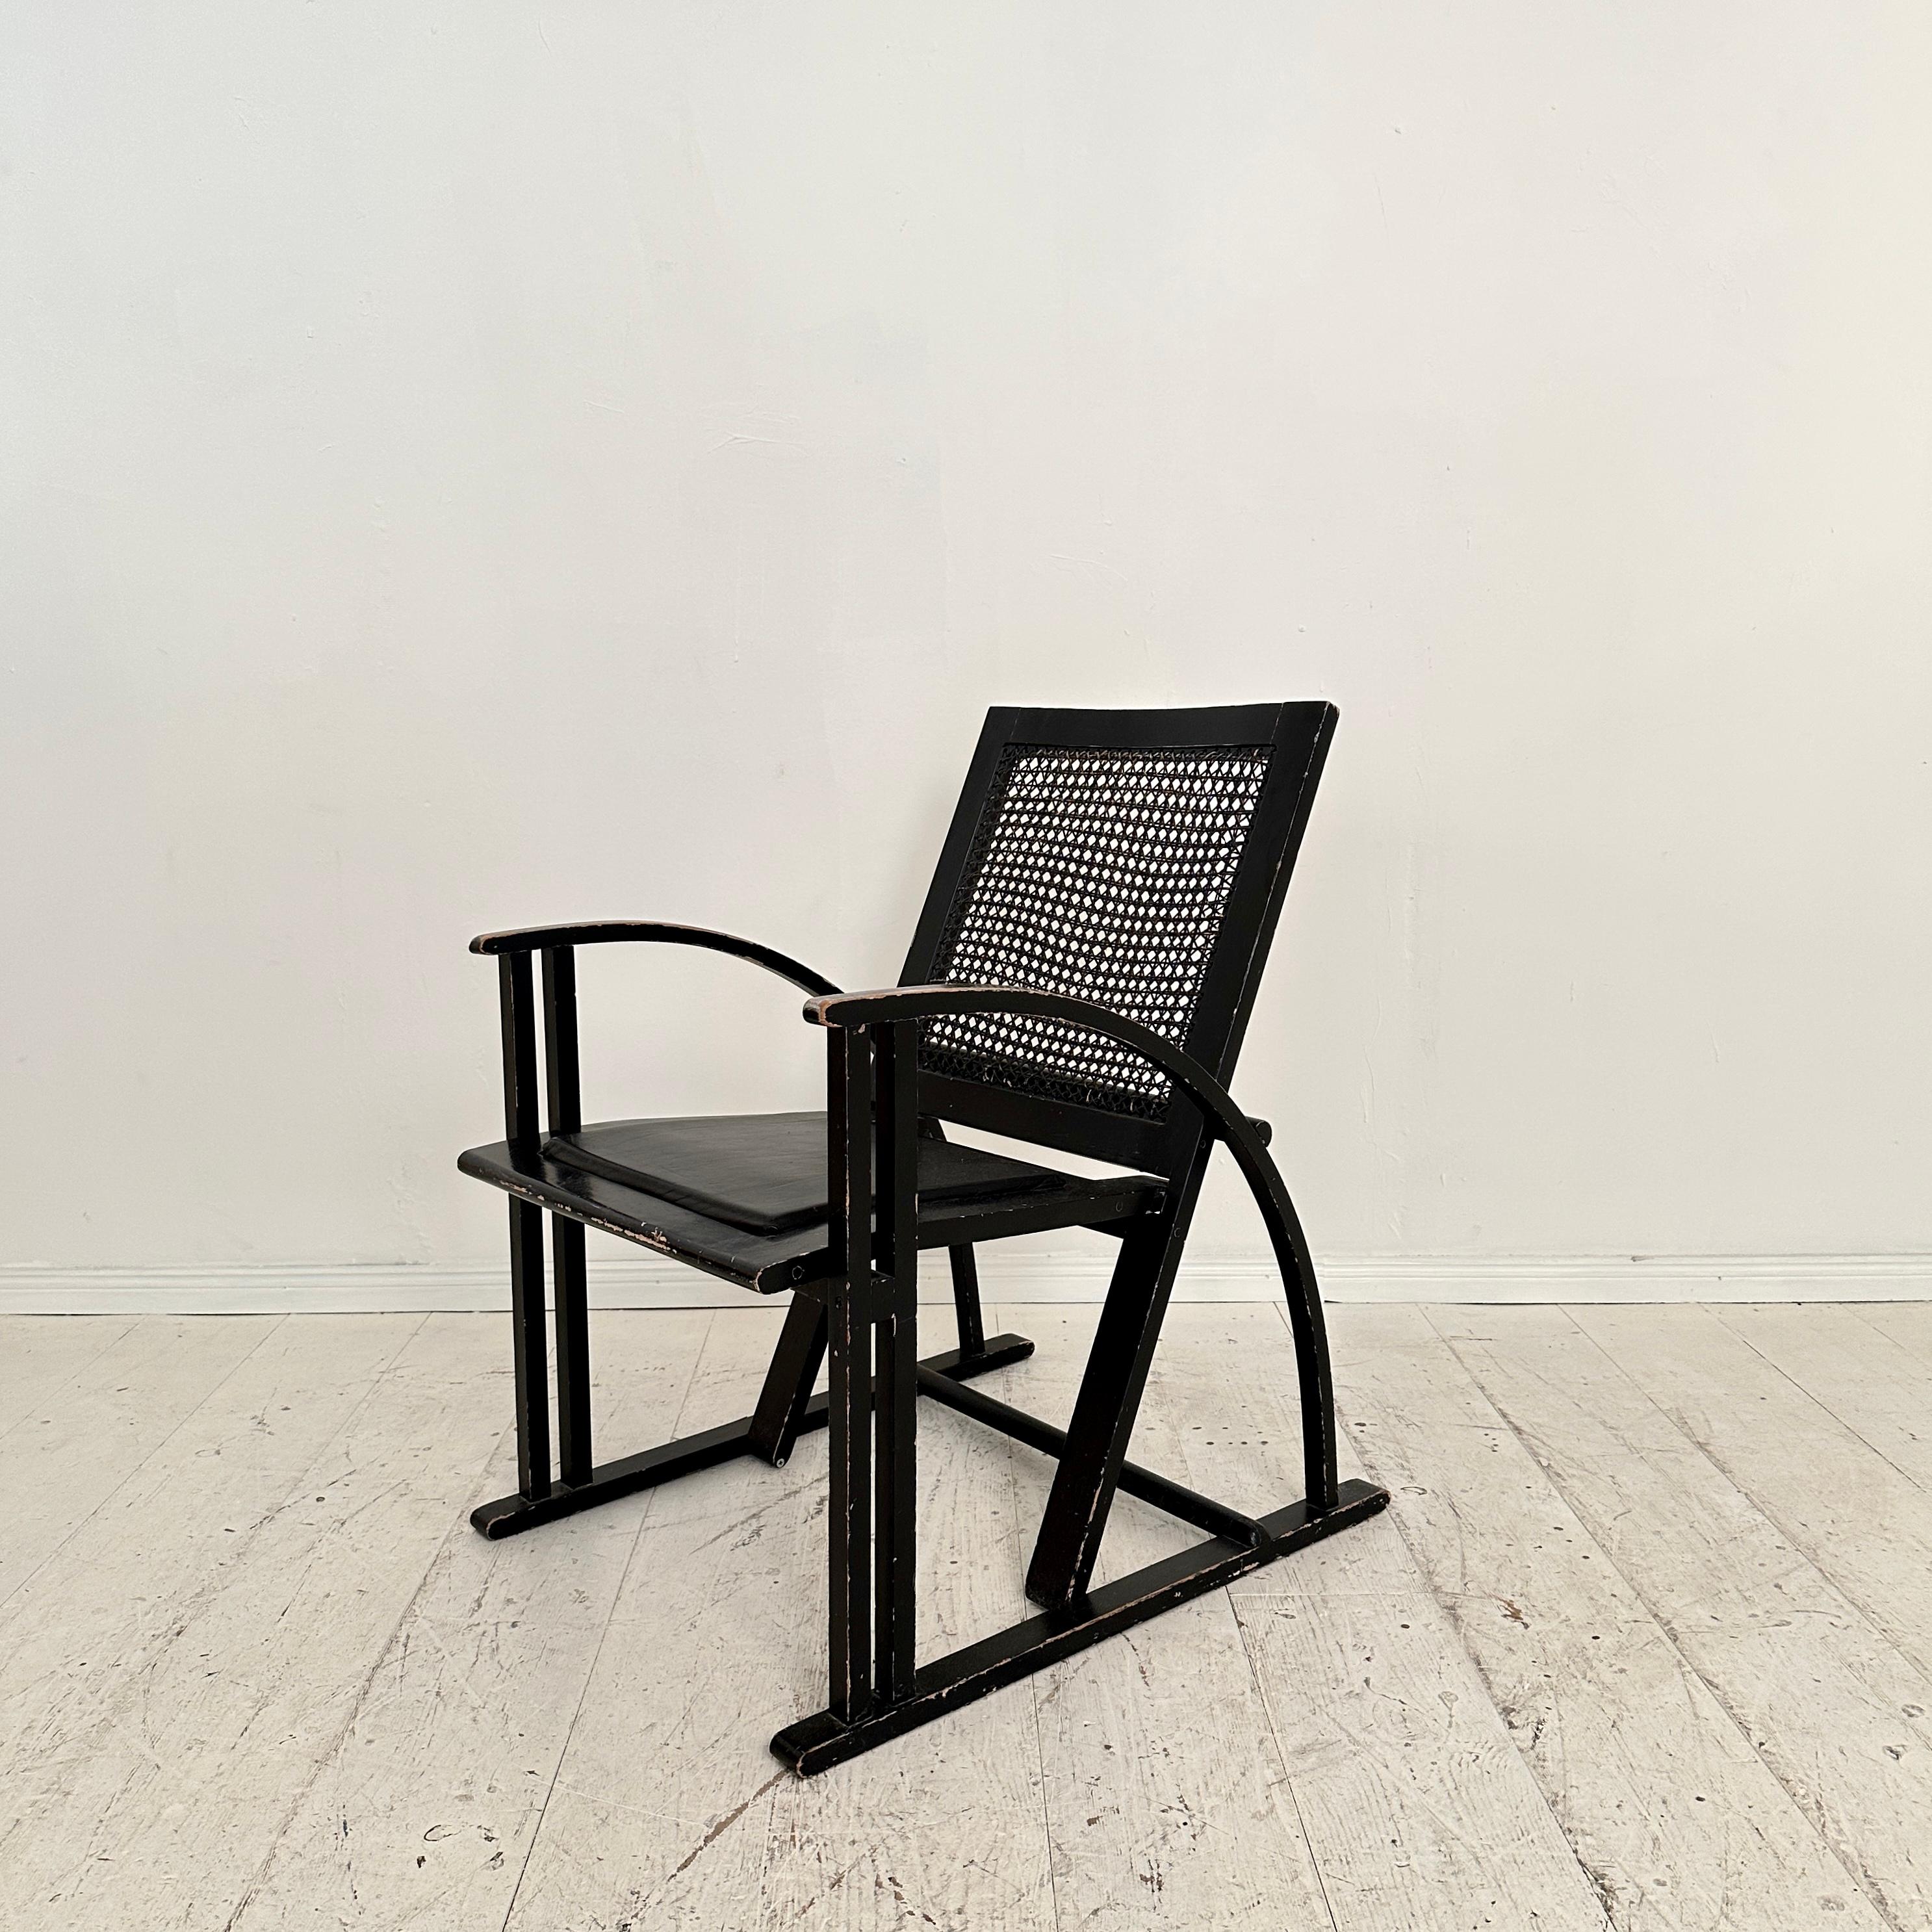 Fantastischer schwarzer Sessel von Pascal Mourgue für Pamco Triconfort, um 1980. Die Stühle sind aus schwarz lackiertem Buchenholz gefertigt. Der Sitz ist mit schwarzem Leder gepolstert und die Rückenlehne ist gepolstert.
Ein einzigartiges Stück,